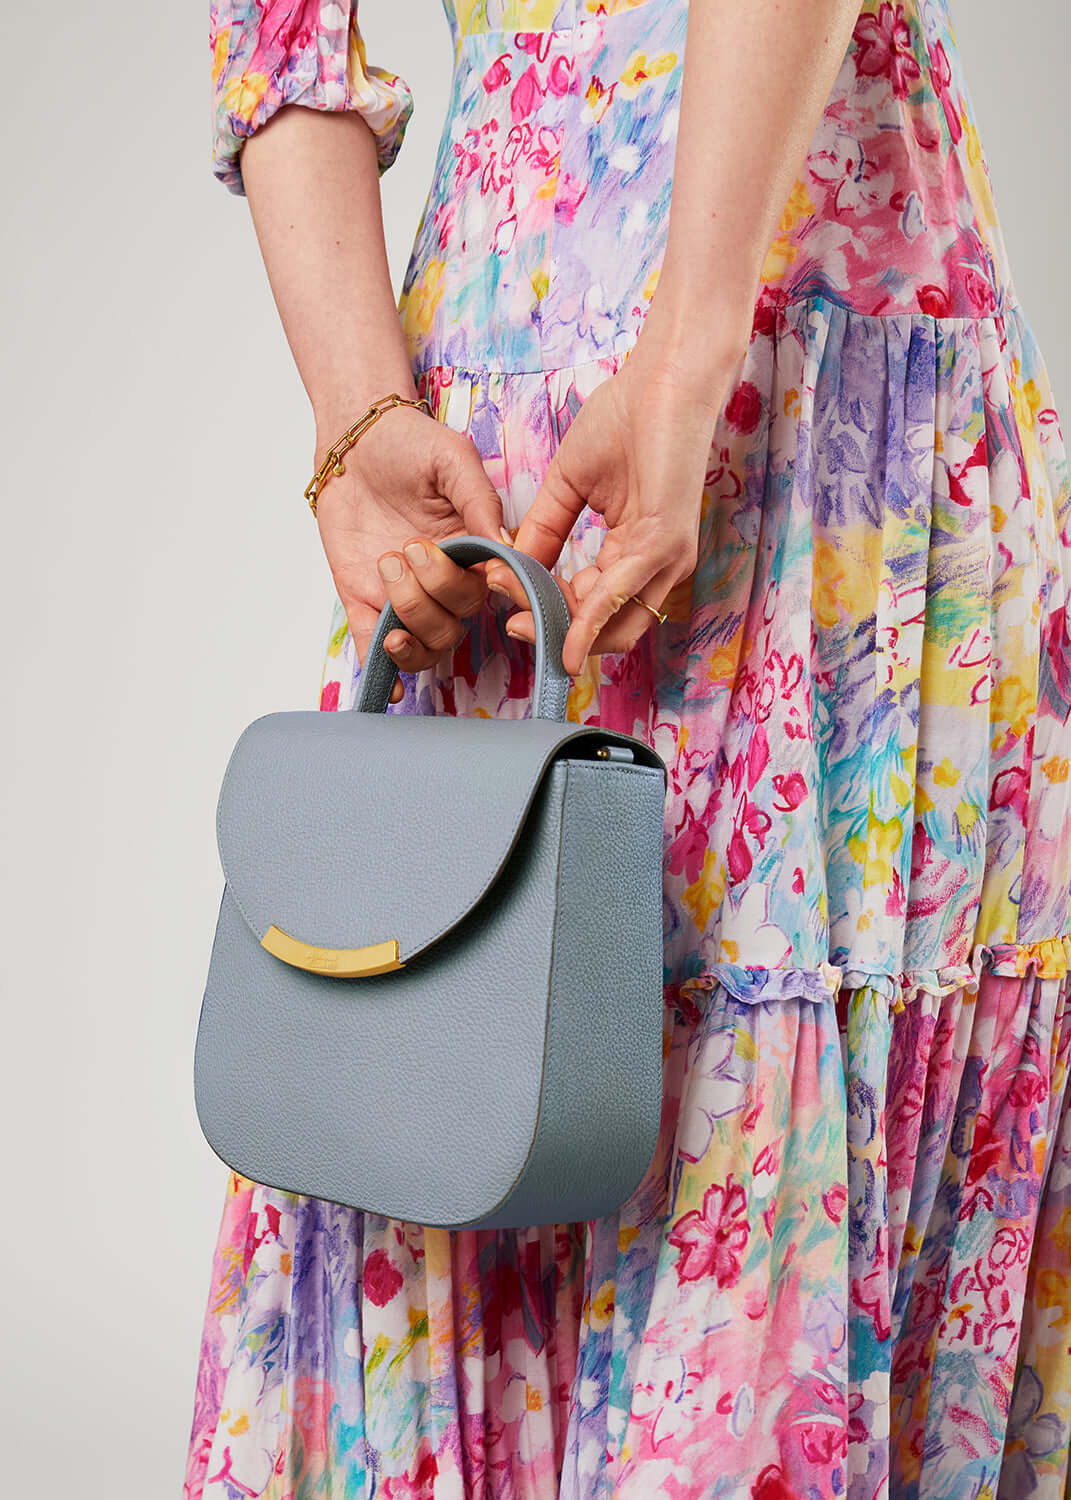 Charlotte Elizabeth 'Bloomsbury' bag  Bags, Types of handbags, Fashion  handbags